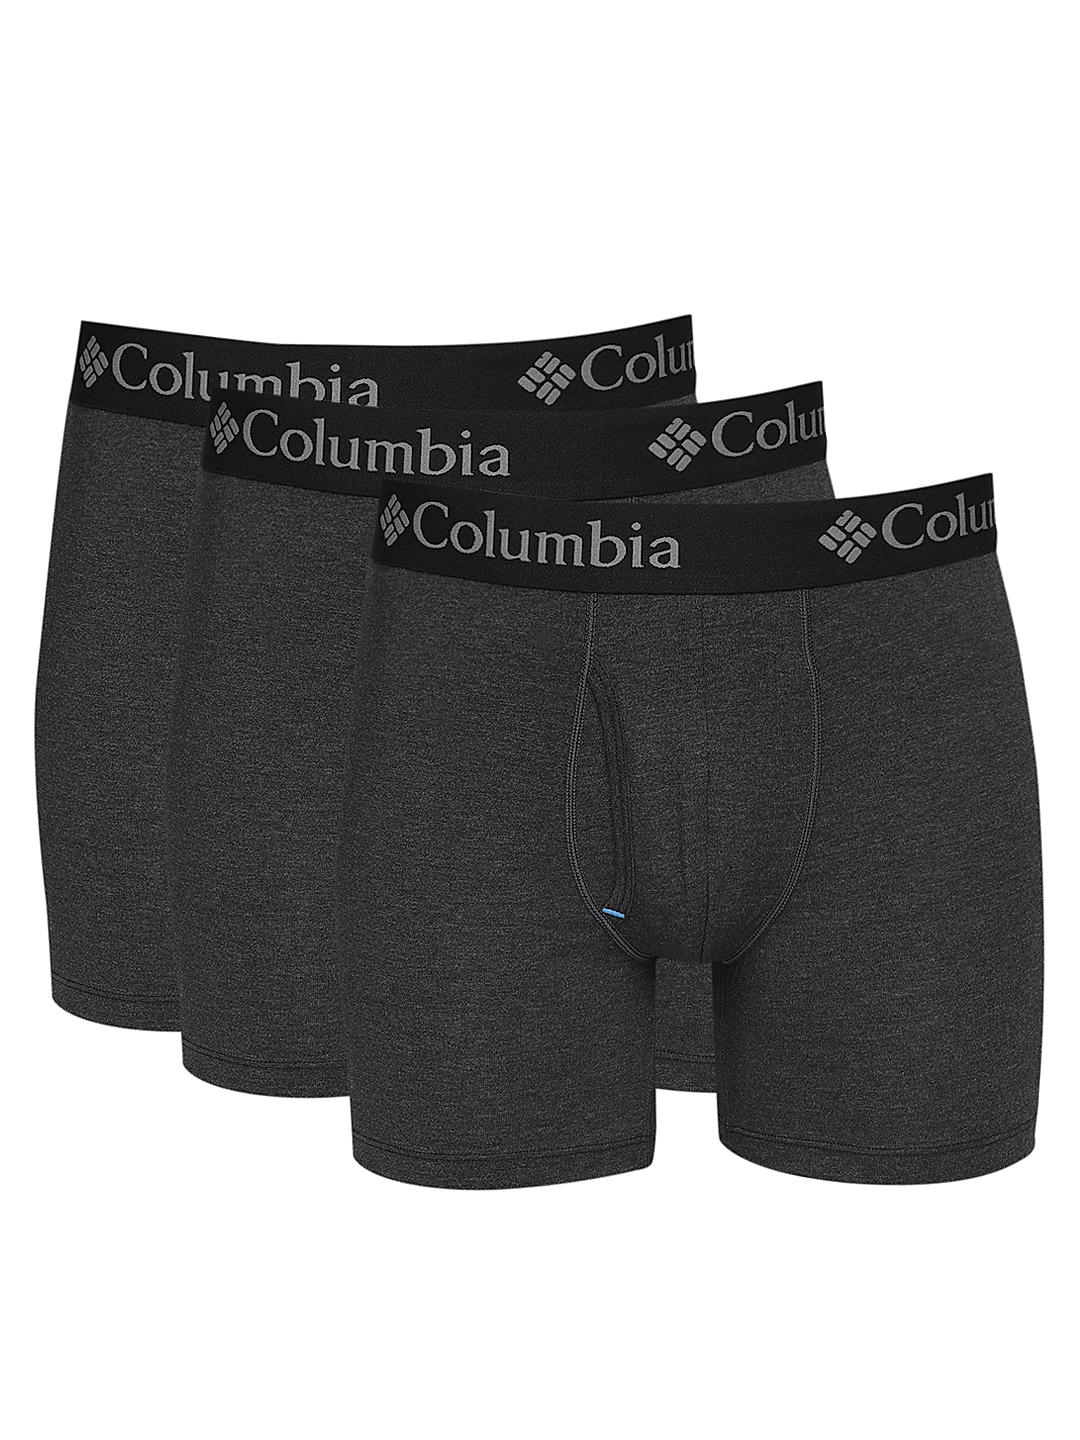 Kll Beautiful New Year 2024 Men'S Cotton Boxer Briefs Underwear-Xx-Large